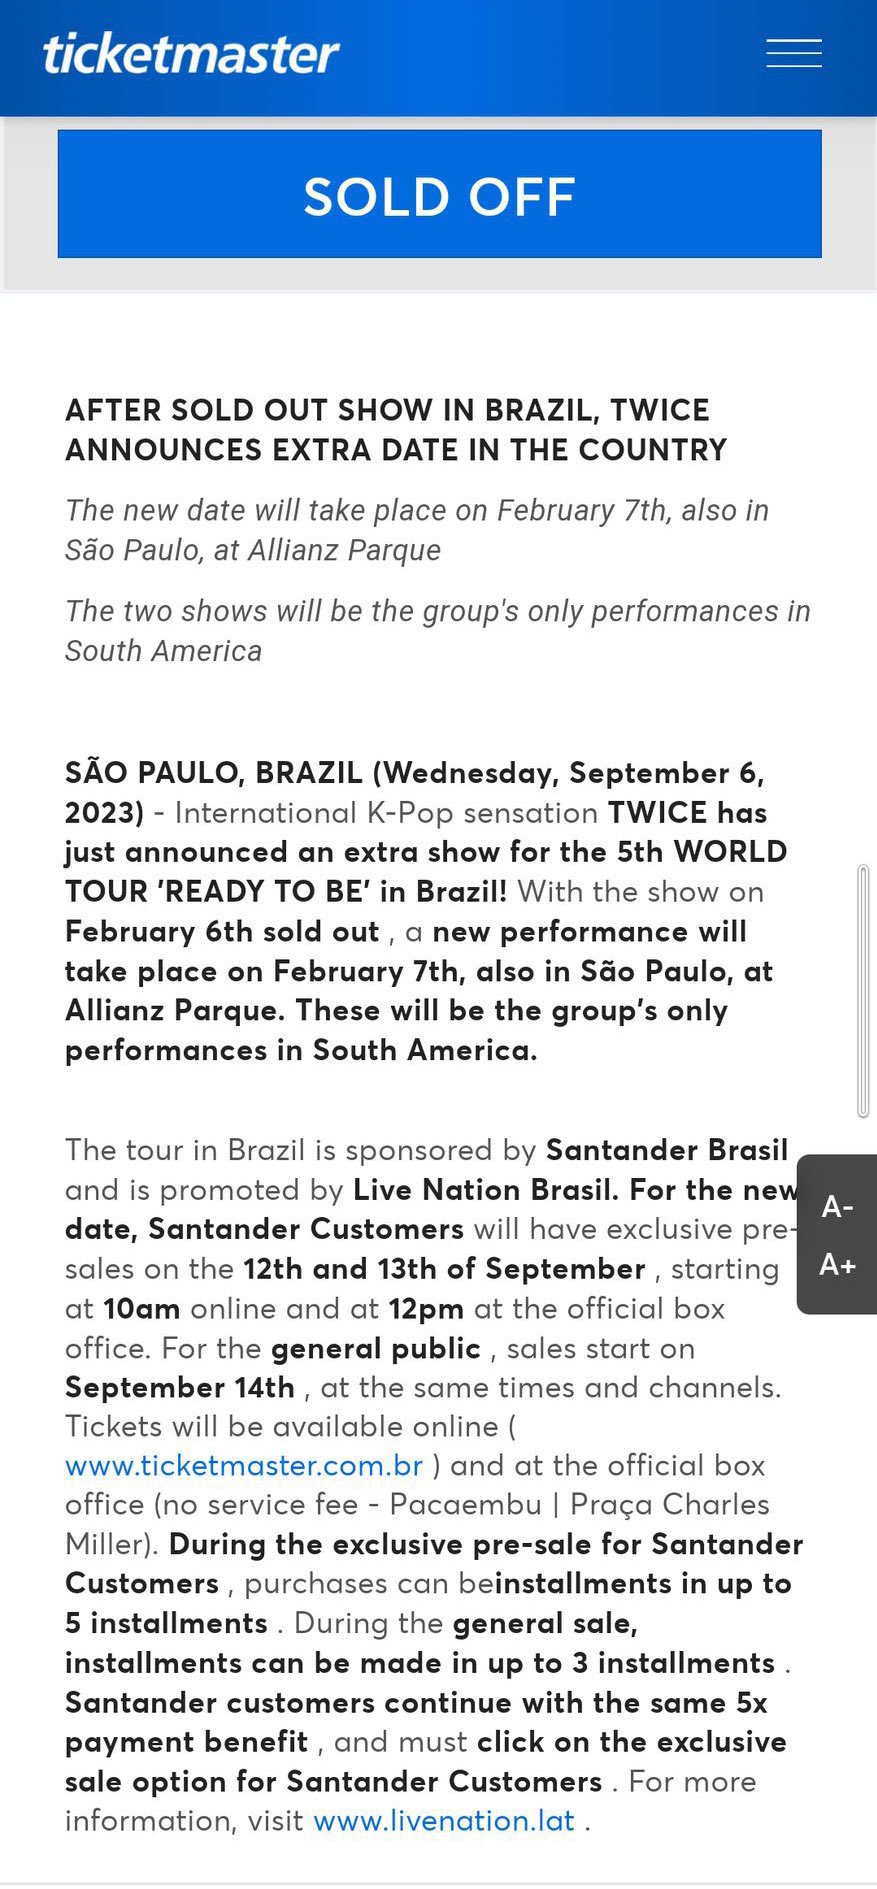 TWICE no Brasil: tudo sobre o show de k-pop em São Paulo